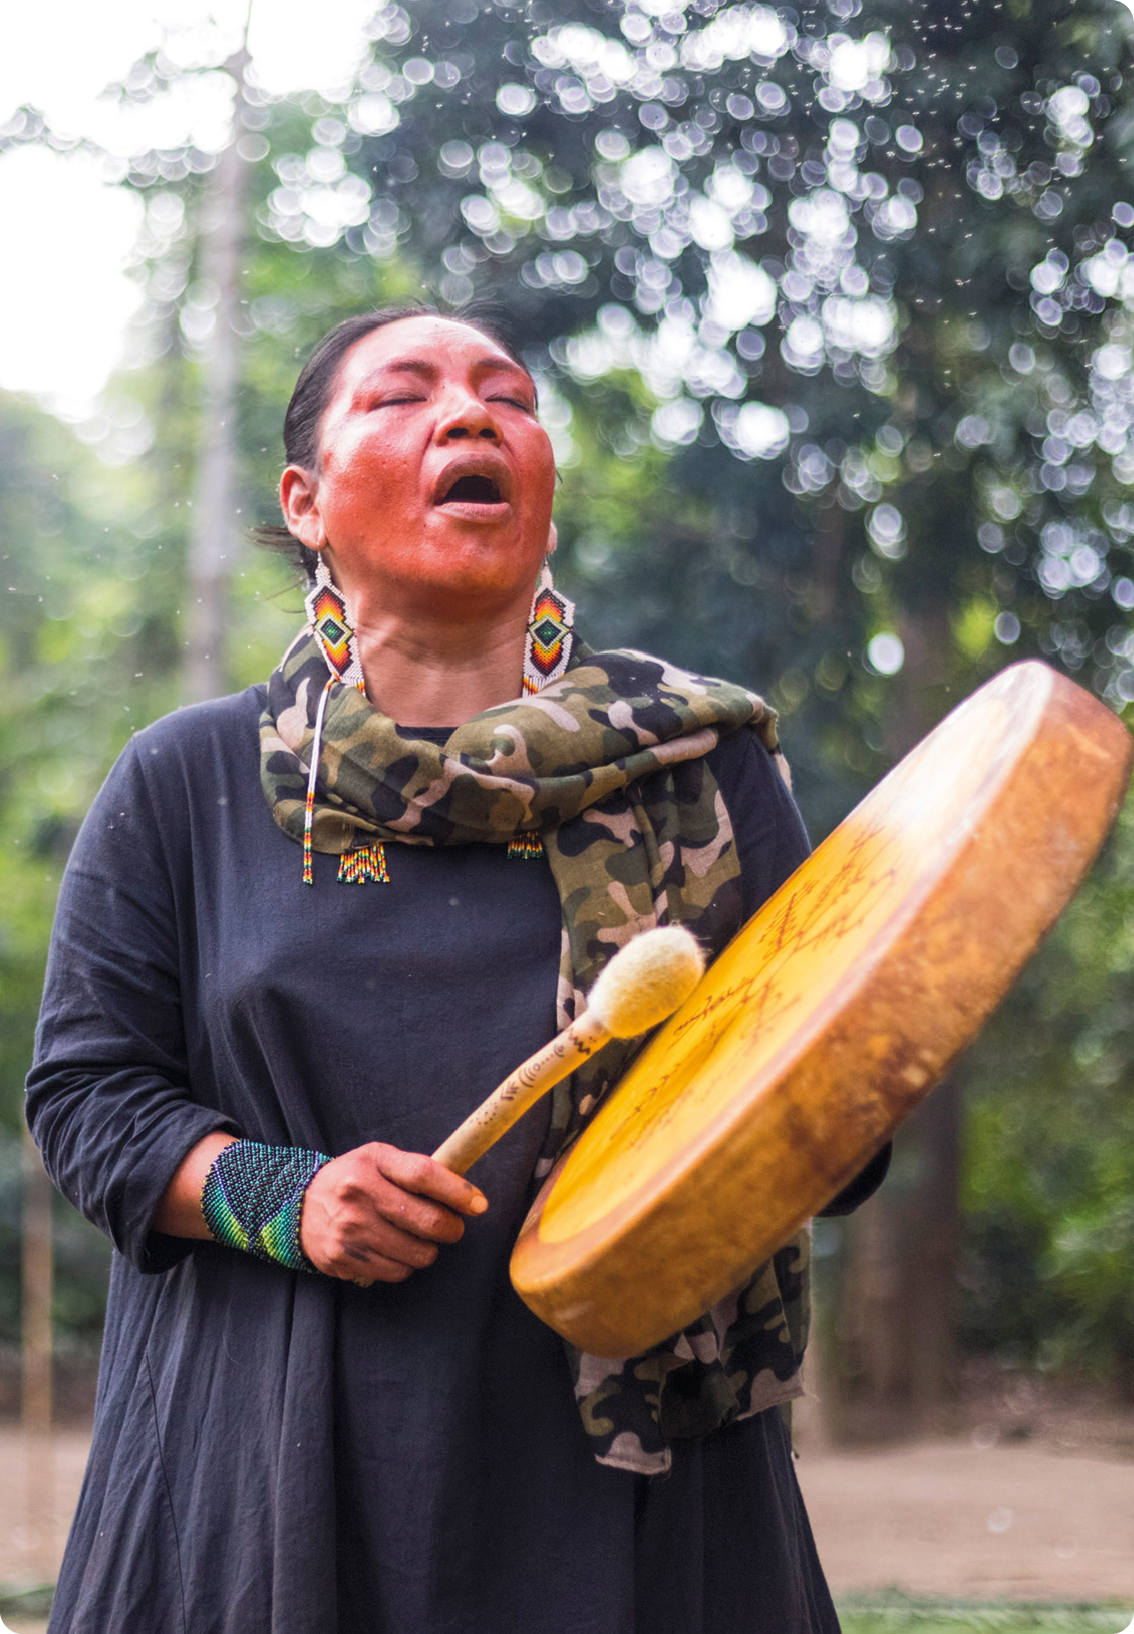 Fotografia. Uma mulher indígena, usando brinco, vestido azul e lenço no pescoço, está de pé, com os olhos fechados, segurando com as mãos um instrumento musical de percussão.